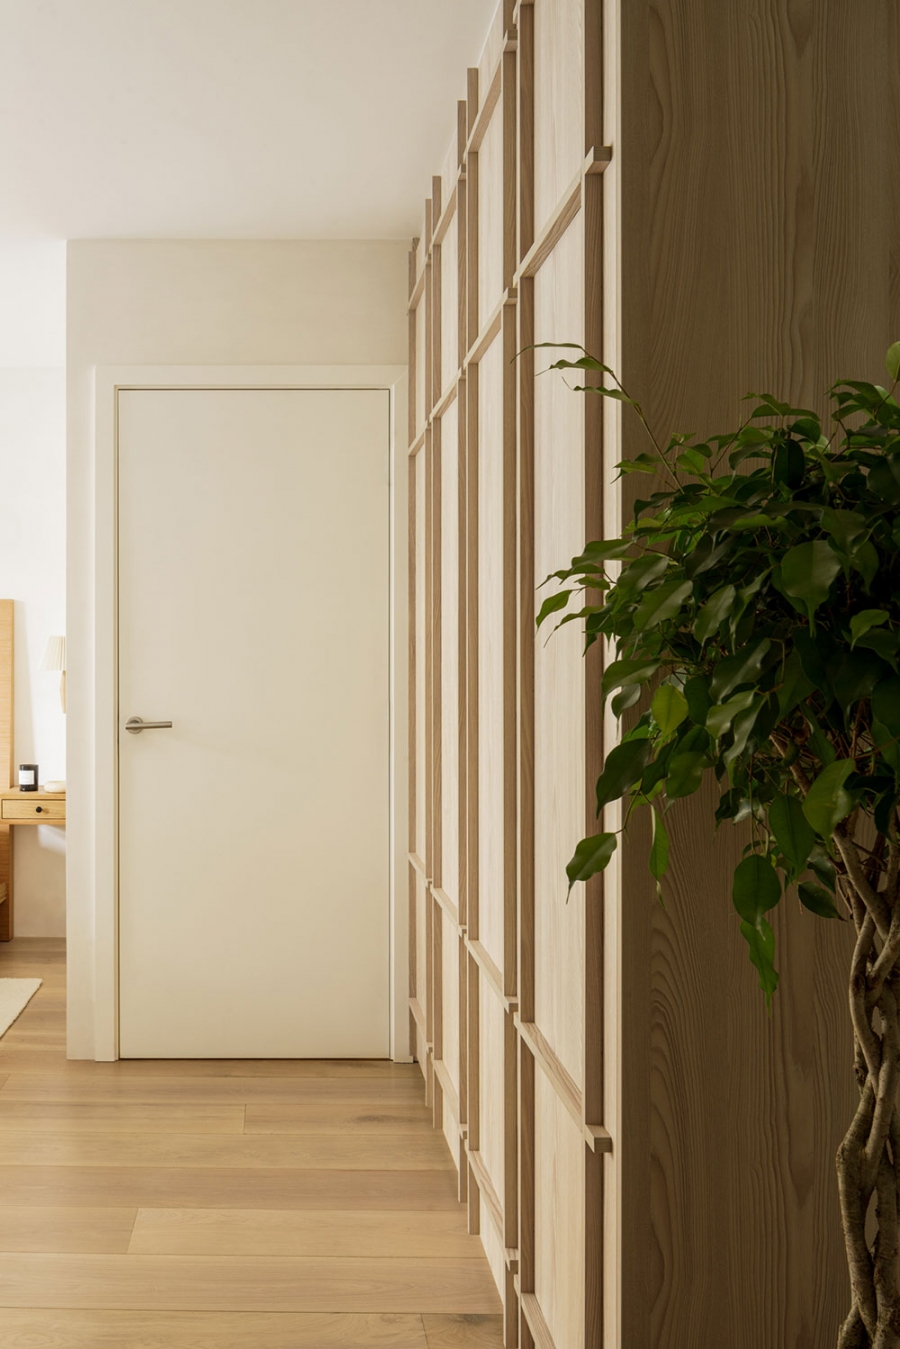 Hầu hết vật liệu thiết kế nội thất đều thân thiện với môi trường, 'tuổi thọ' cao như gỗ, đá,... Hệ thống tủ lưu trữ gỗ cao kịch trần giúp tối ưu hóa không gian hiệu quả.